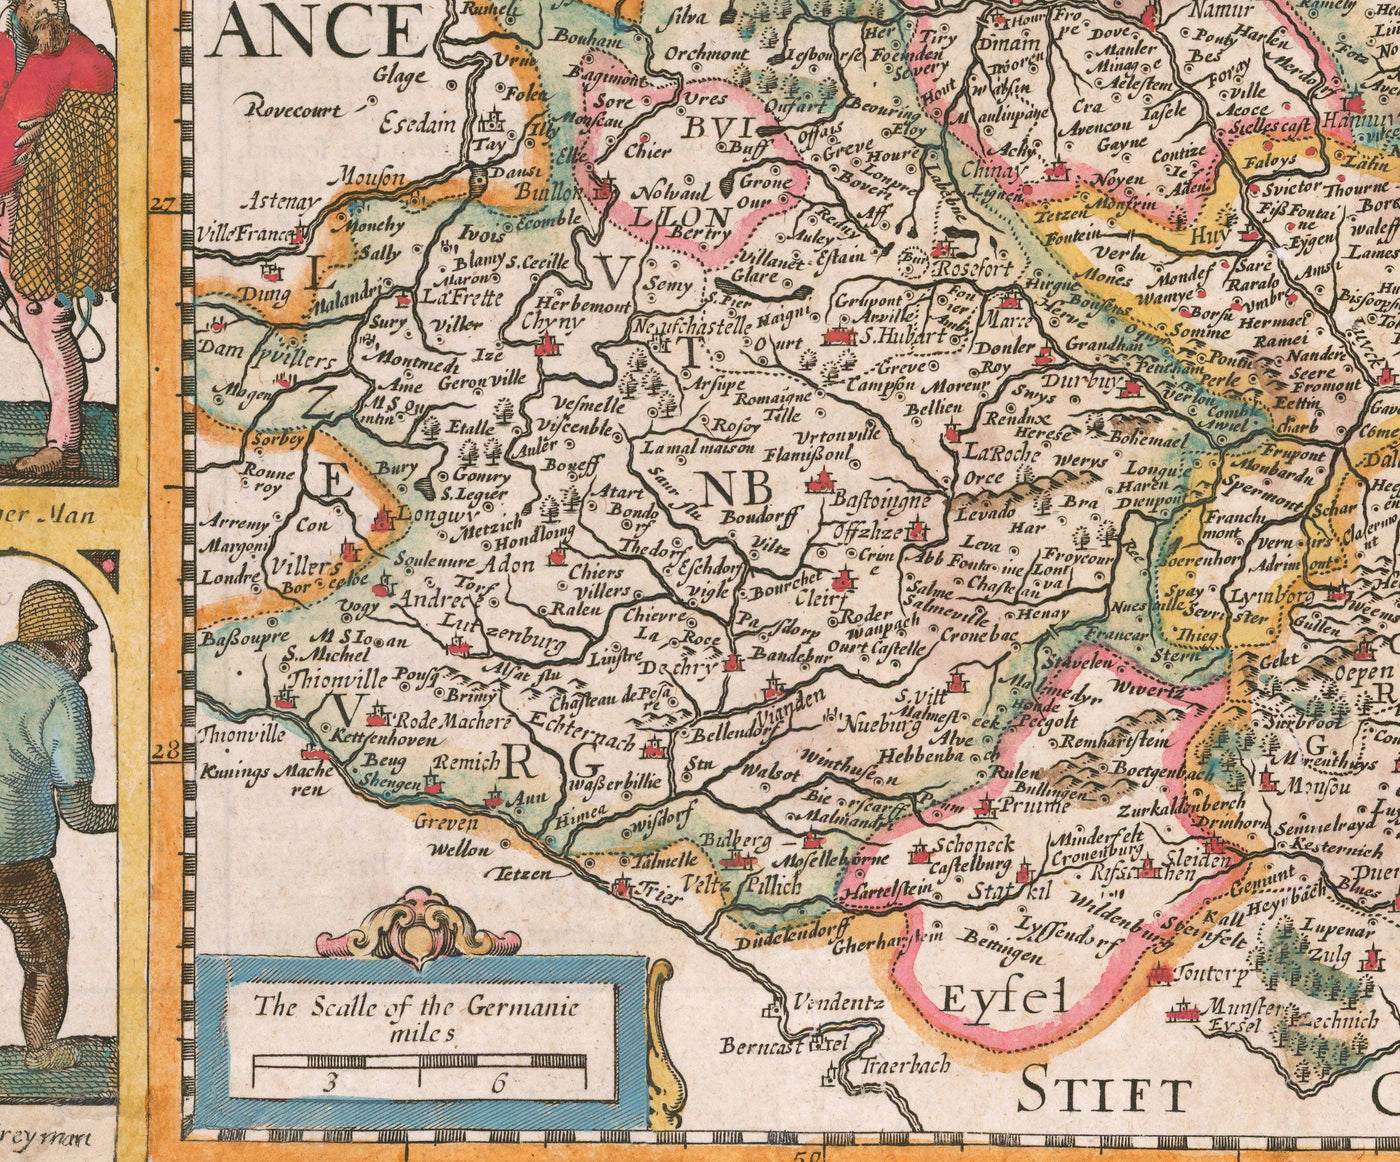 Mapa antiguo de los países bajos por John Speed, 1627 - Países bajos, Países Bajos, Bélgica, Luxemburgo, Flandes, Belgica